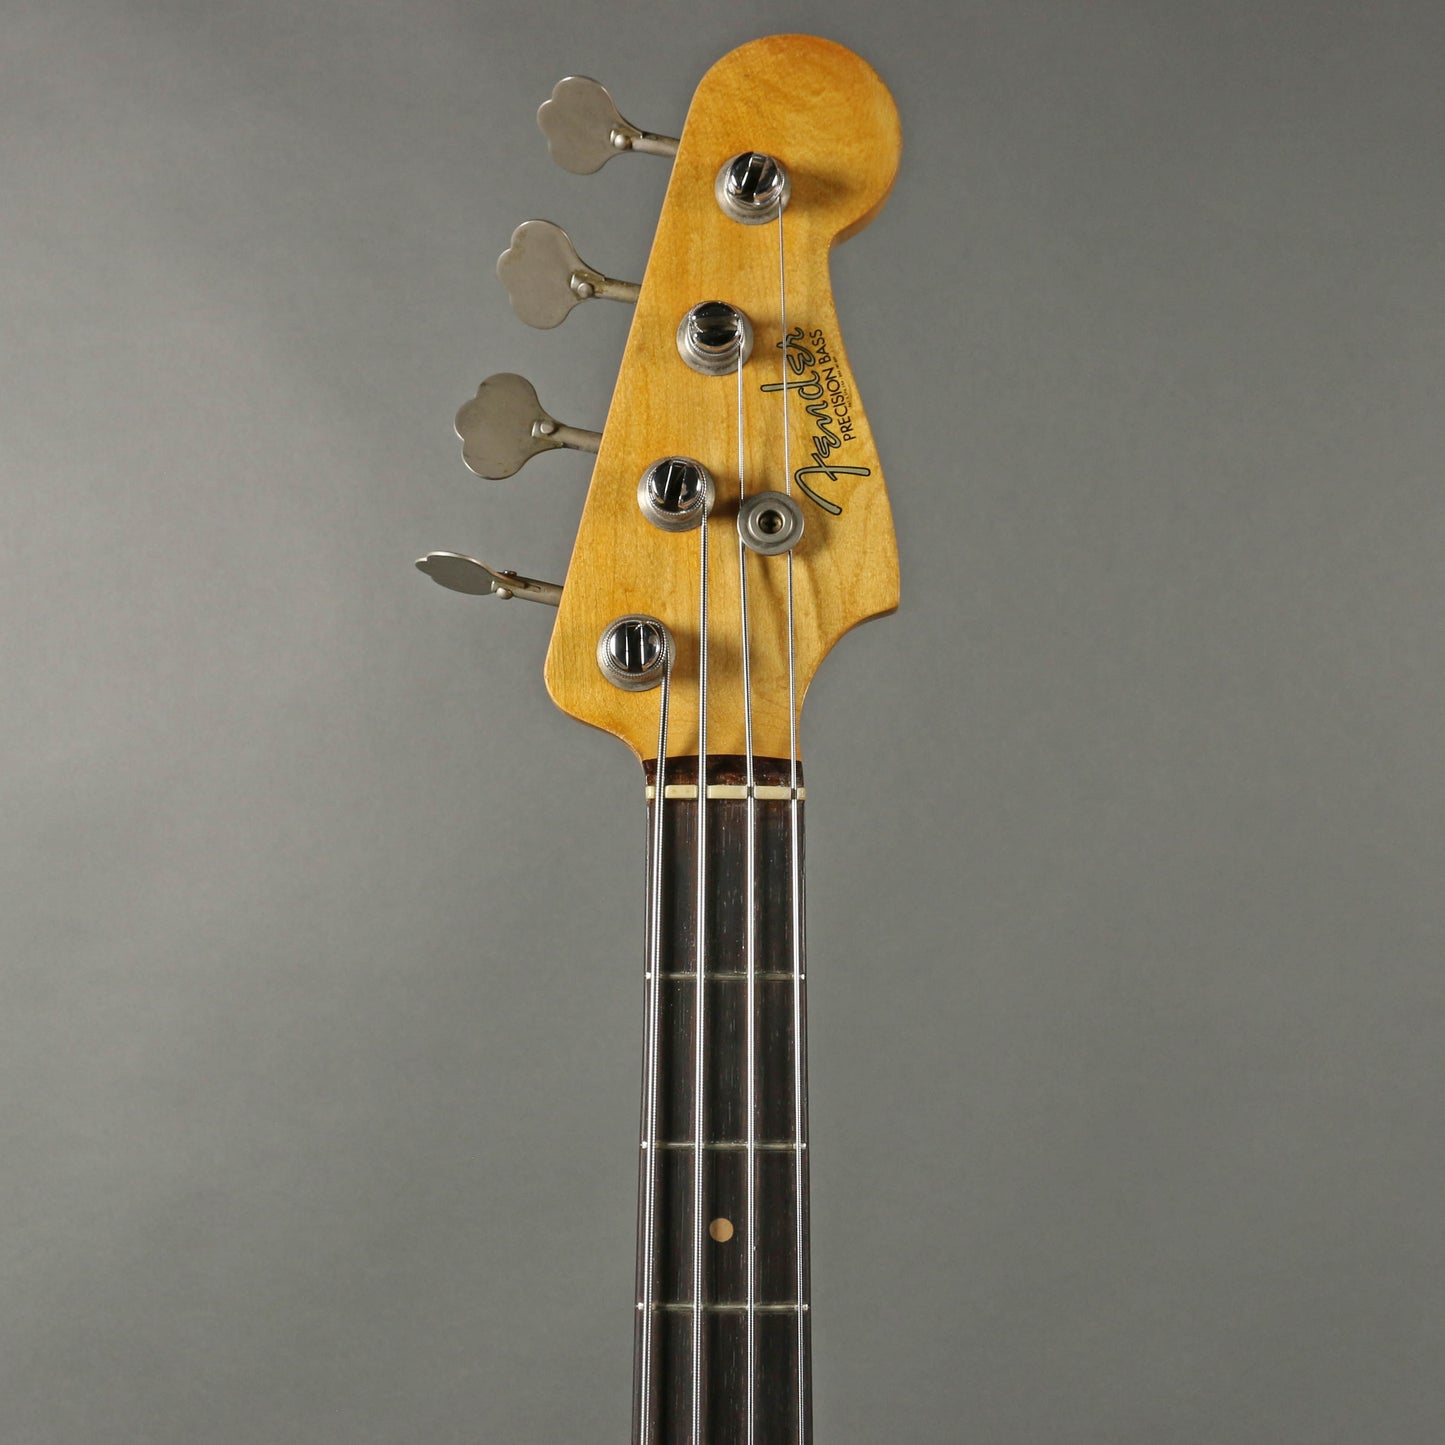 1960 Fender Precision Bass